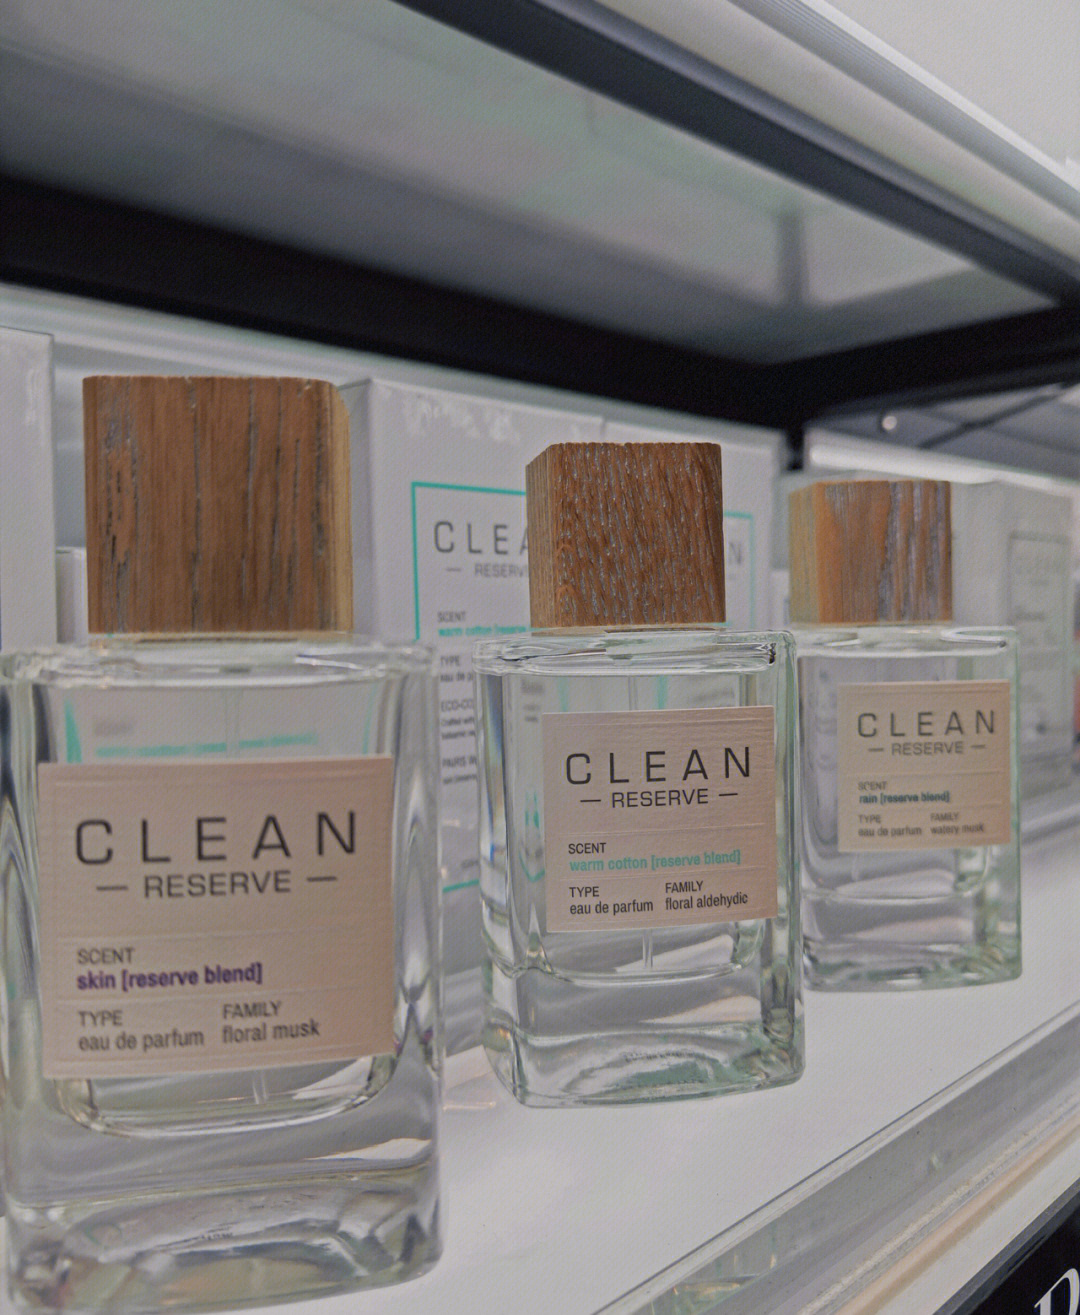 clean香水中国专柜图片